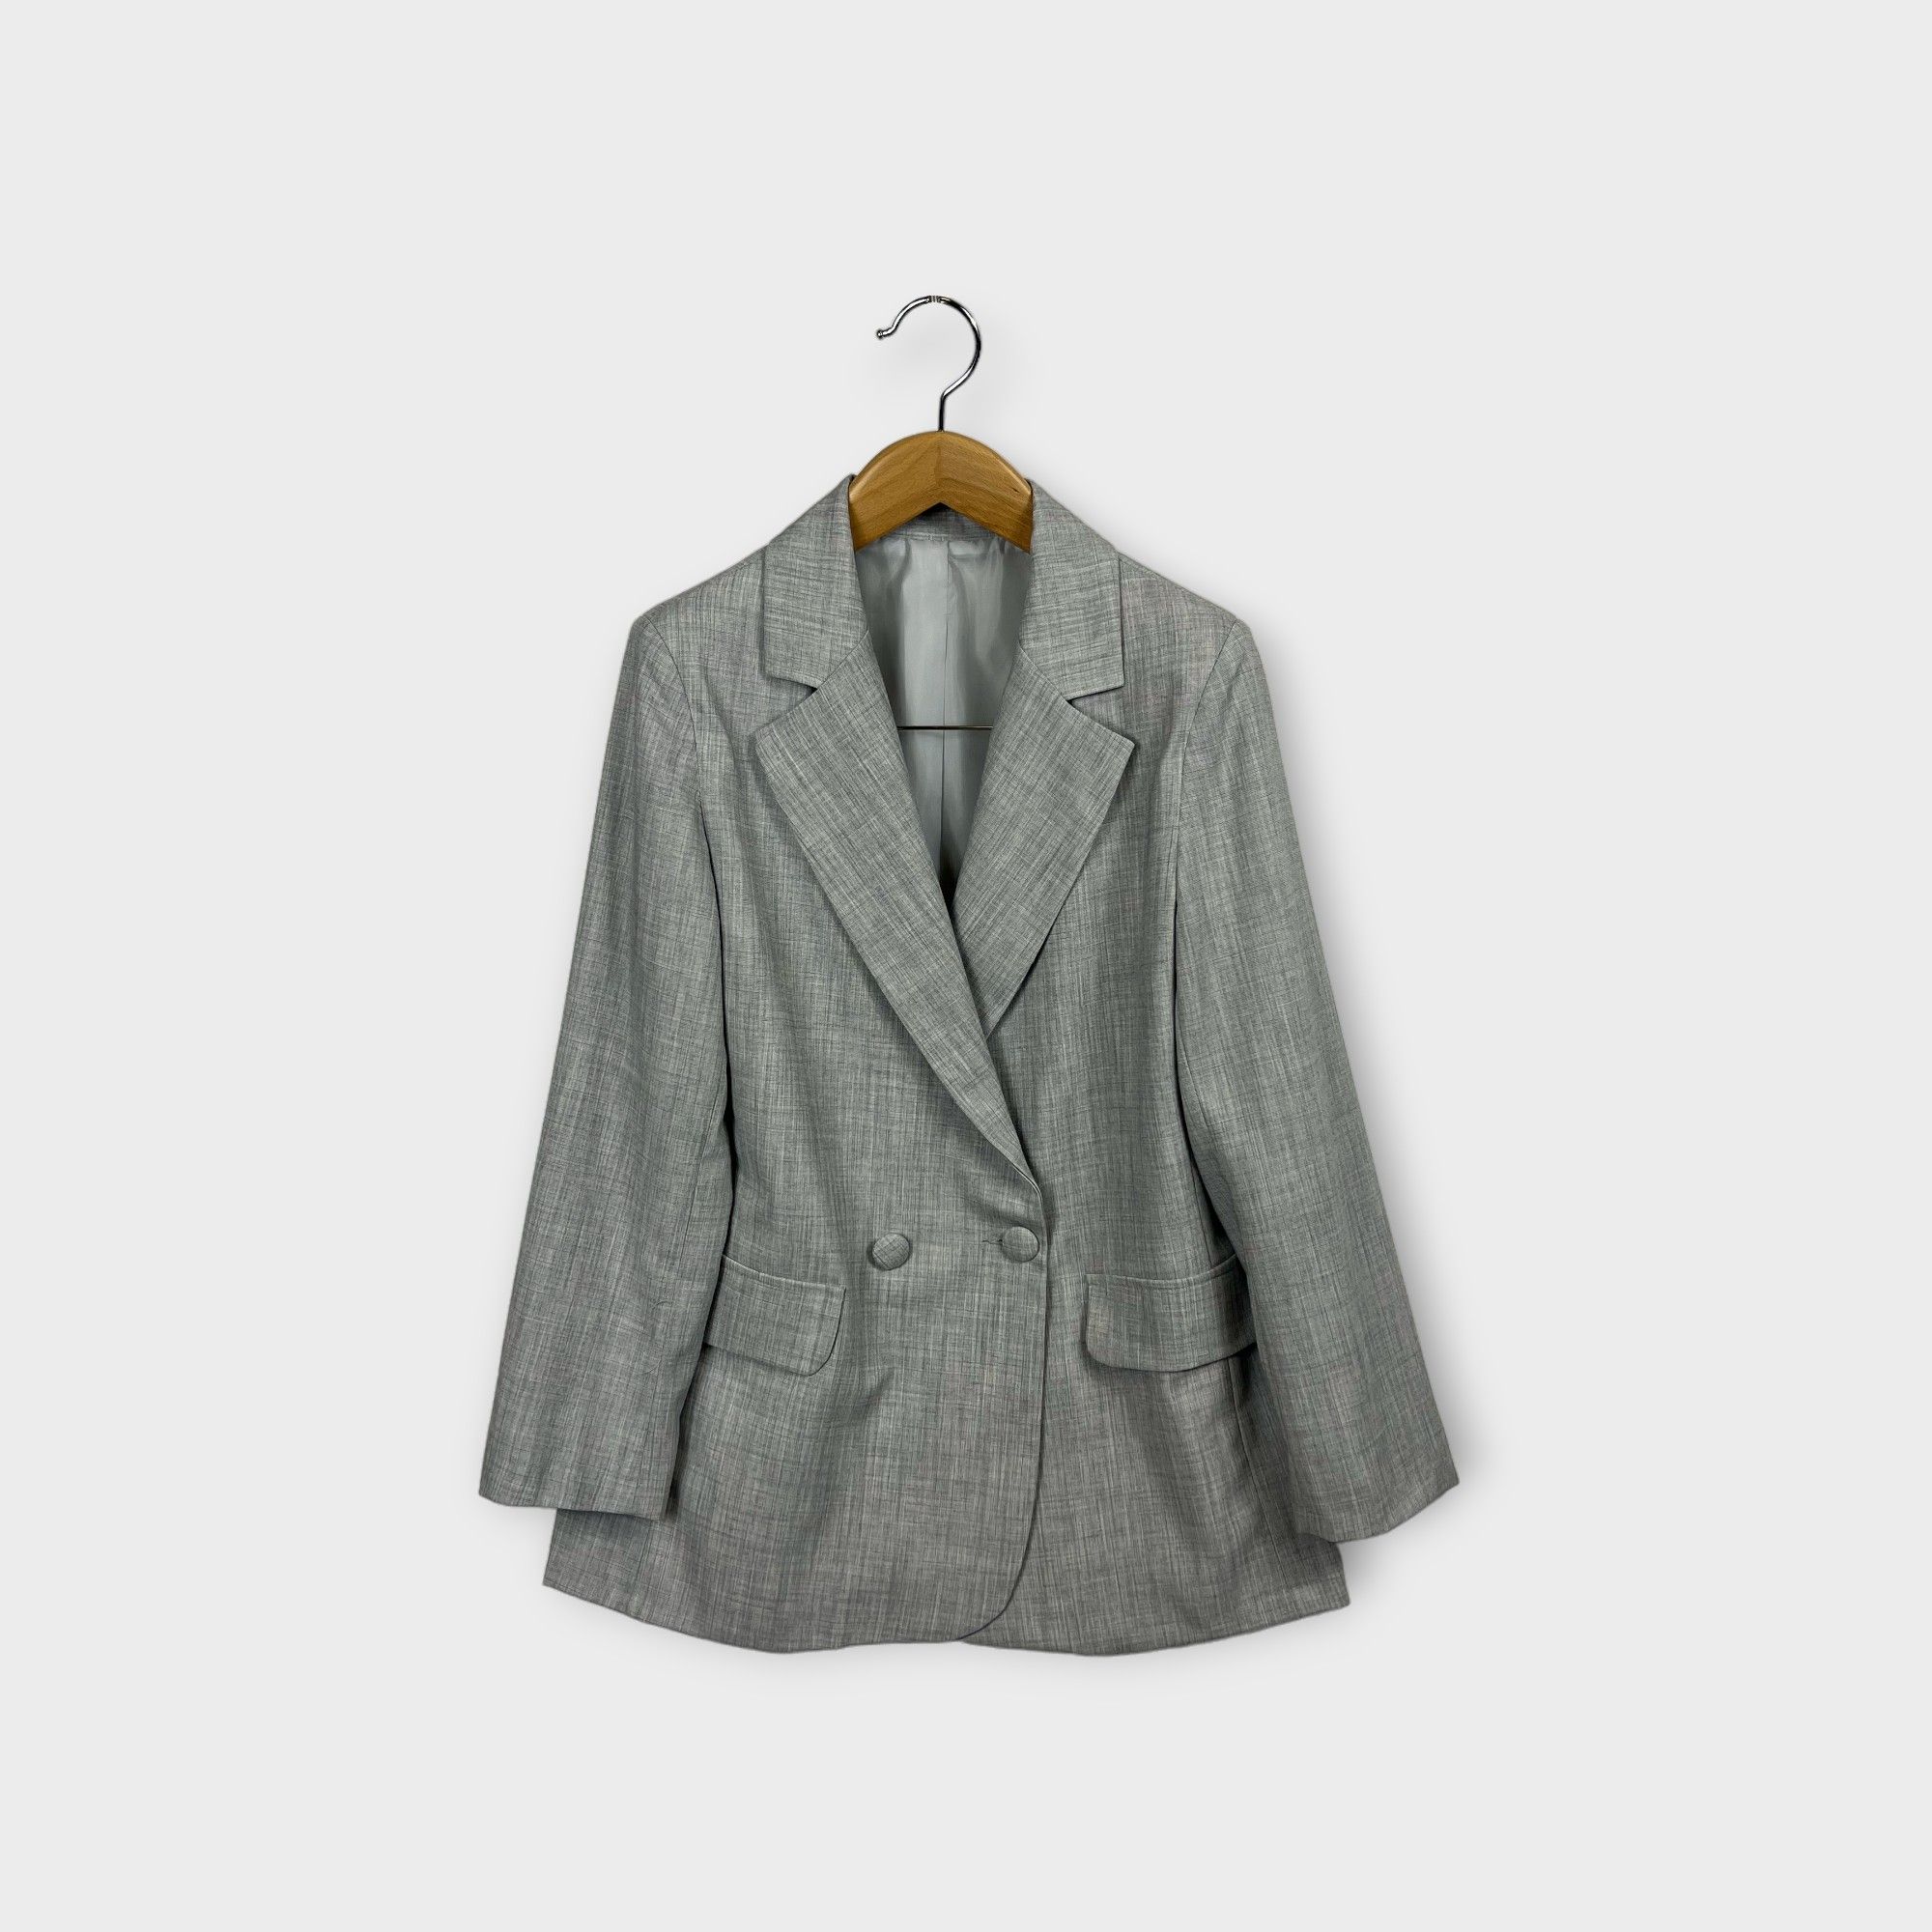 images/virtuemart/product/HELLEH giacca donna doppio petto costruzione sartoriale colore grigio 1.jpg